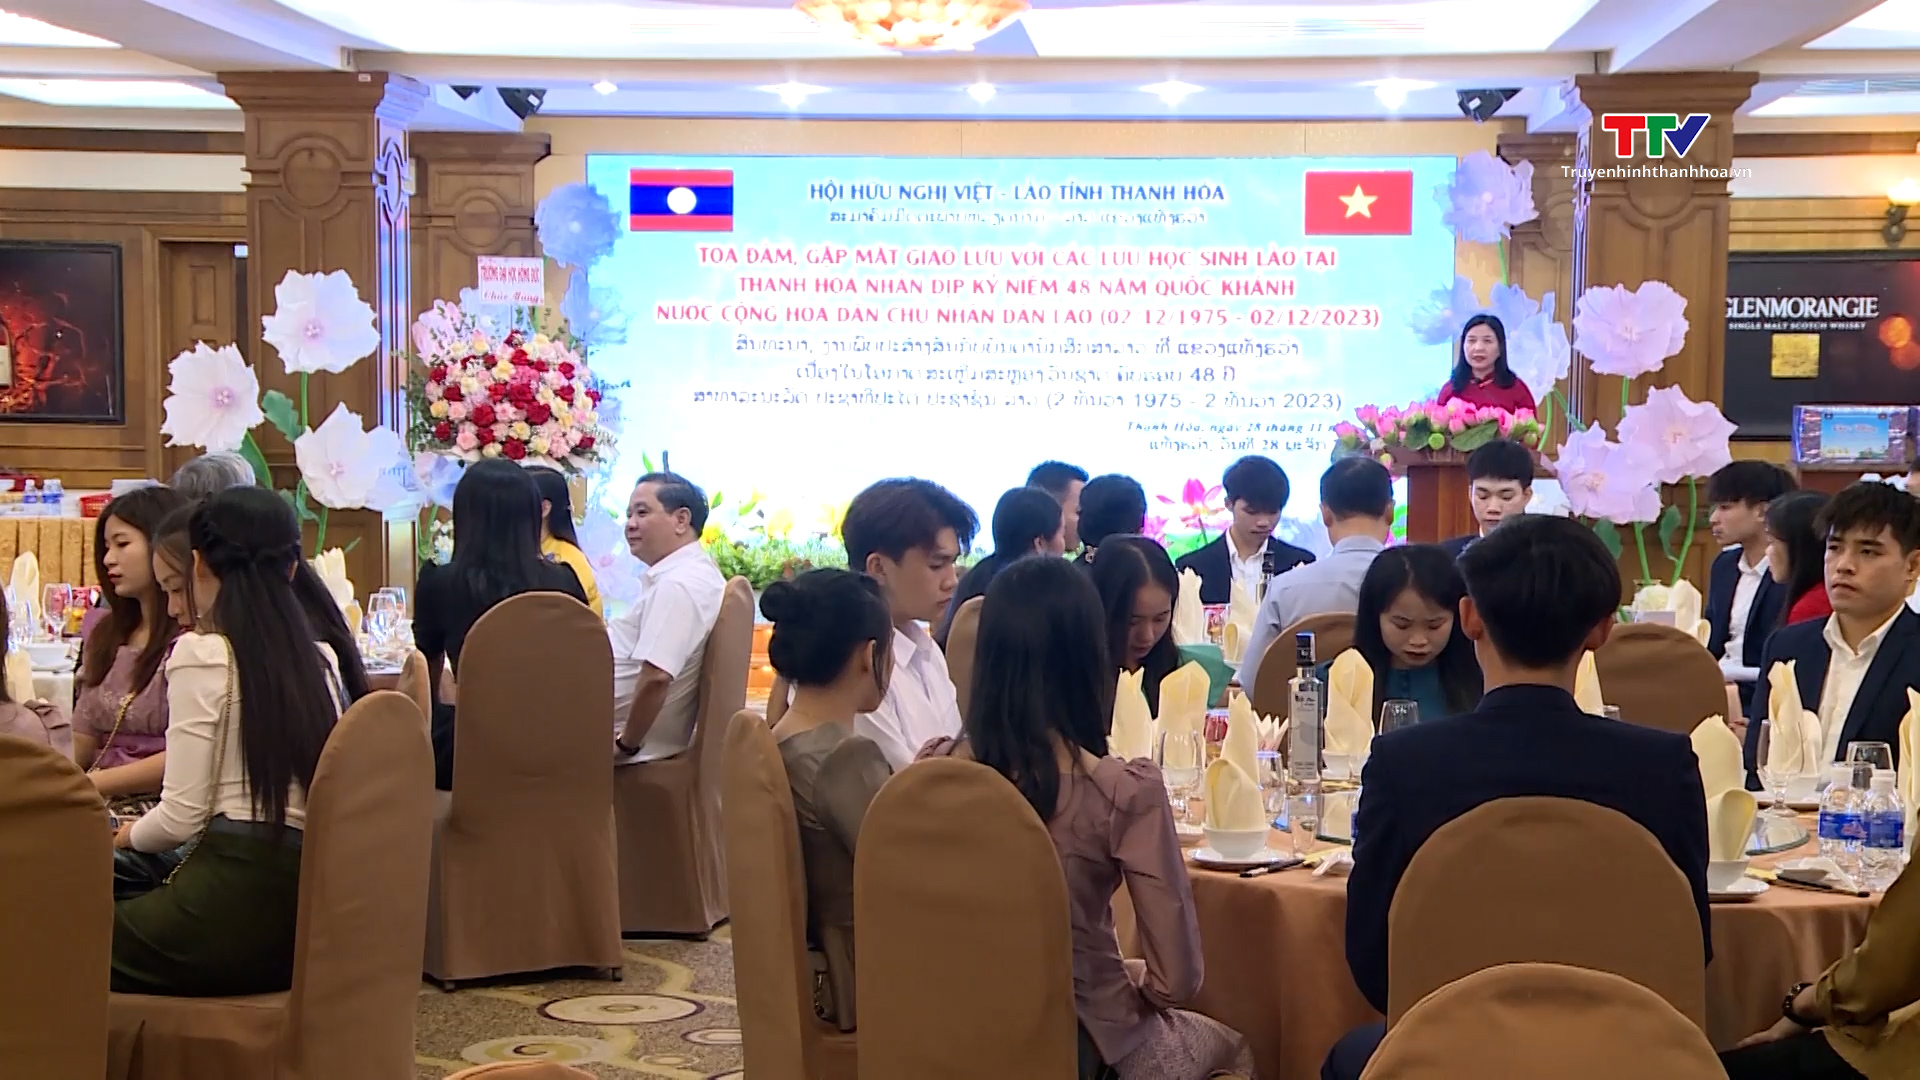 Hội Hữu nghị Việt - Lào tỉnh Thanh Hóa tọa đàm, gặp mặt các lưu học sinh Lào- Ảnh 1.